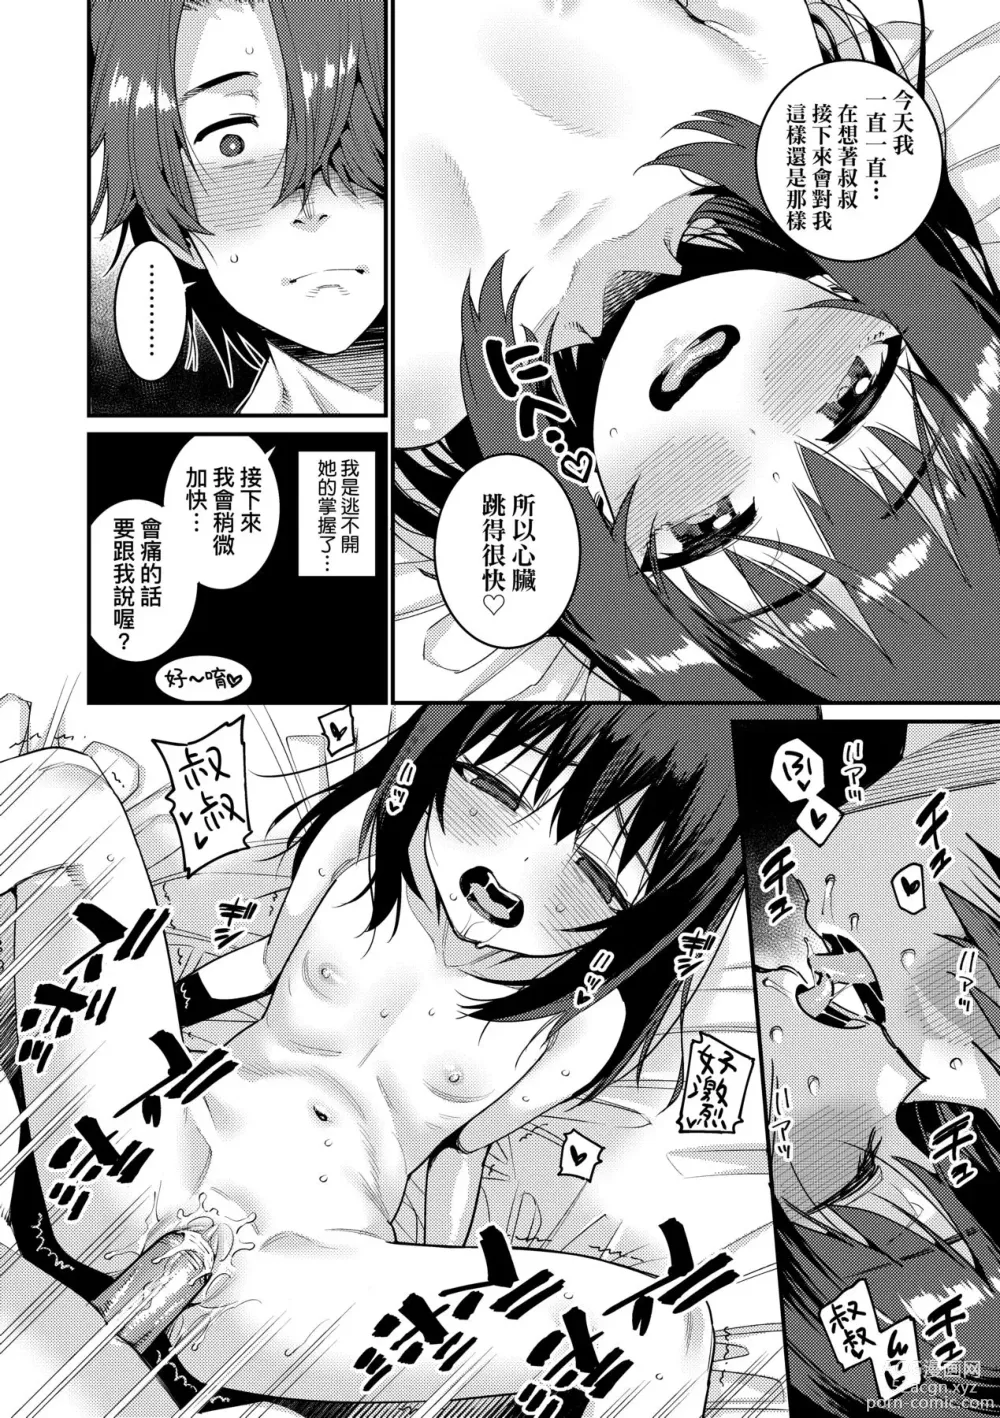 Page 191 of manga Itoshiki Wagaya (decensored)